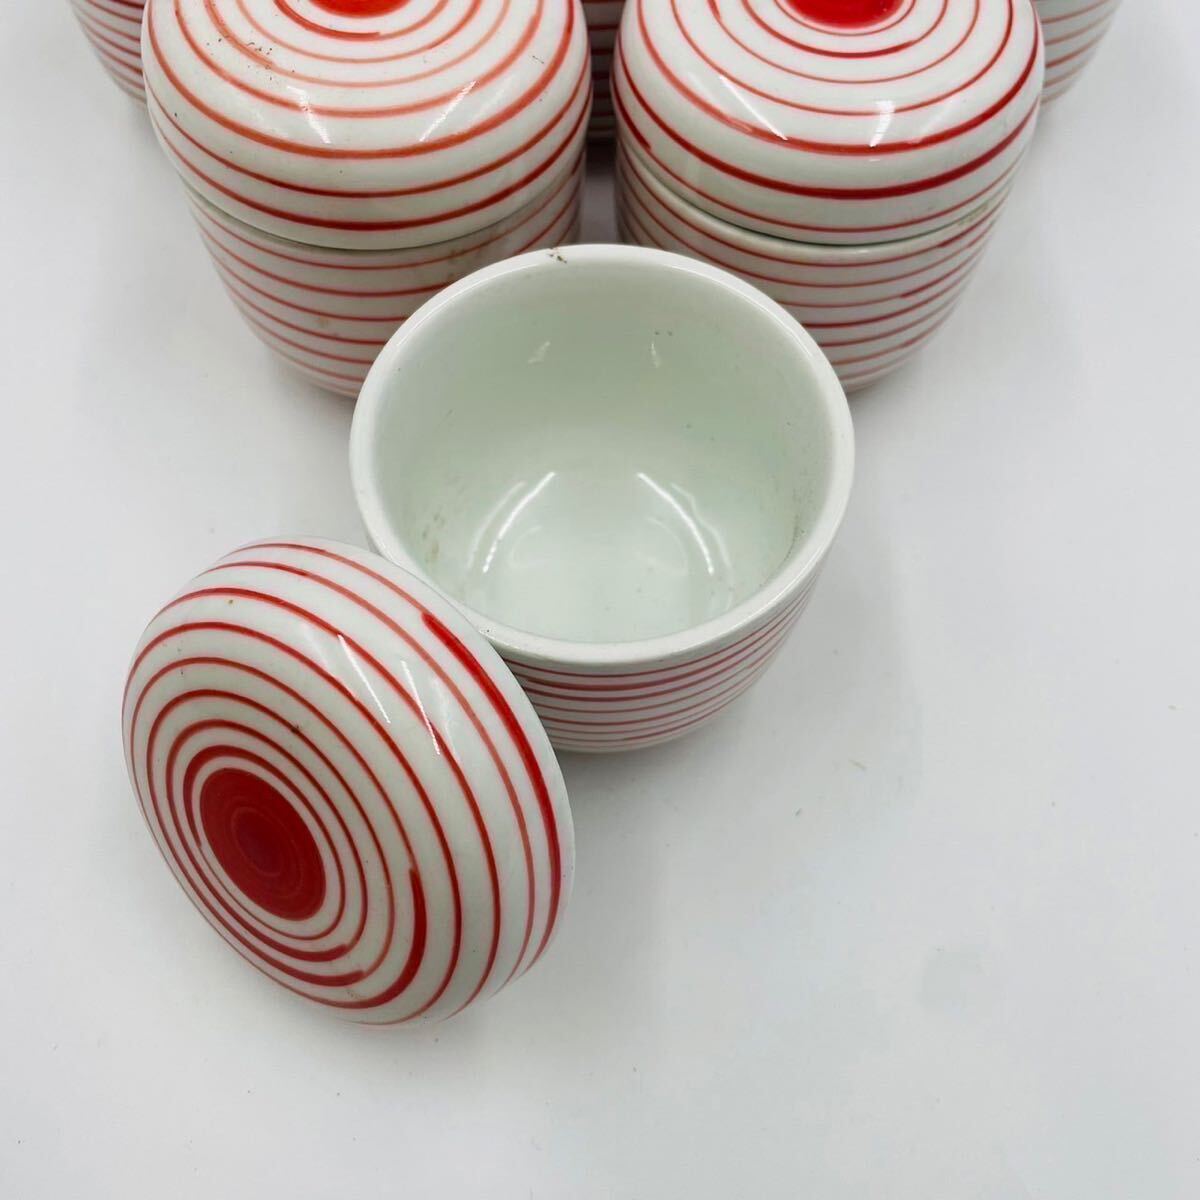 * чашка пароварка японская посуда посуда 10 покупатель комплект идзакая бар стоимость . еда и напитки магазин крышка имеется красный калибр 7cm высота 5.5cm